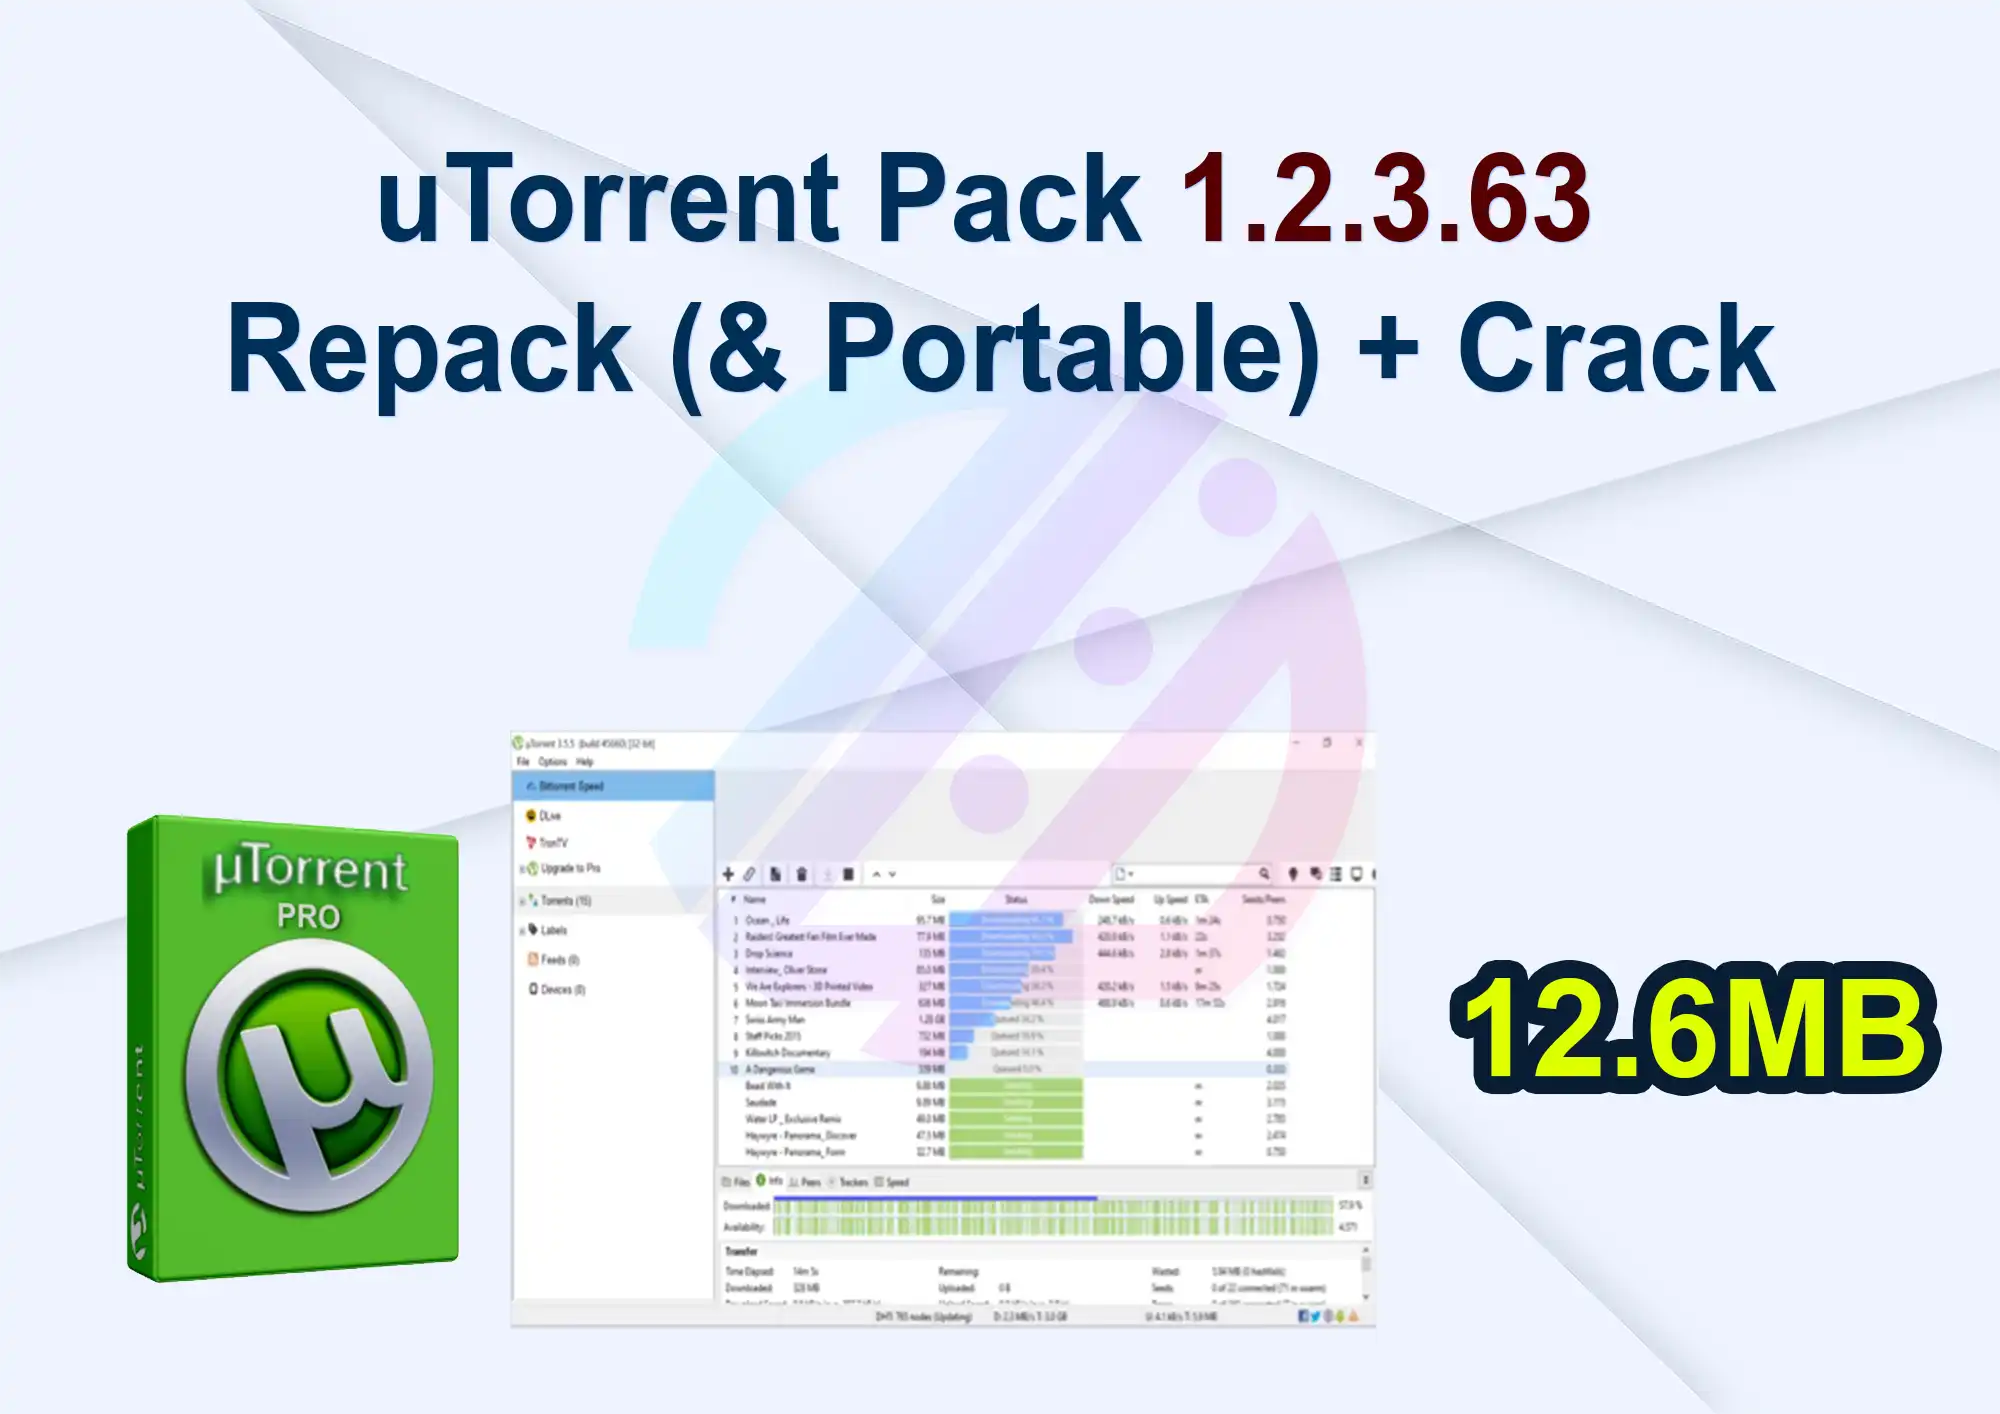 uTorrent Pack 1.2.3.63 Repack (& Portable) + Crack